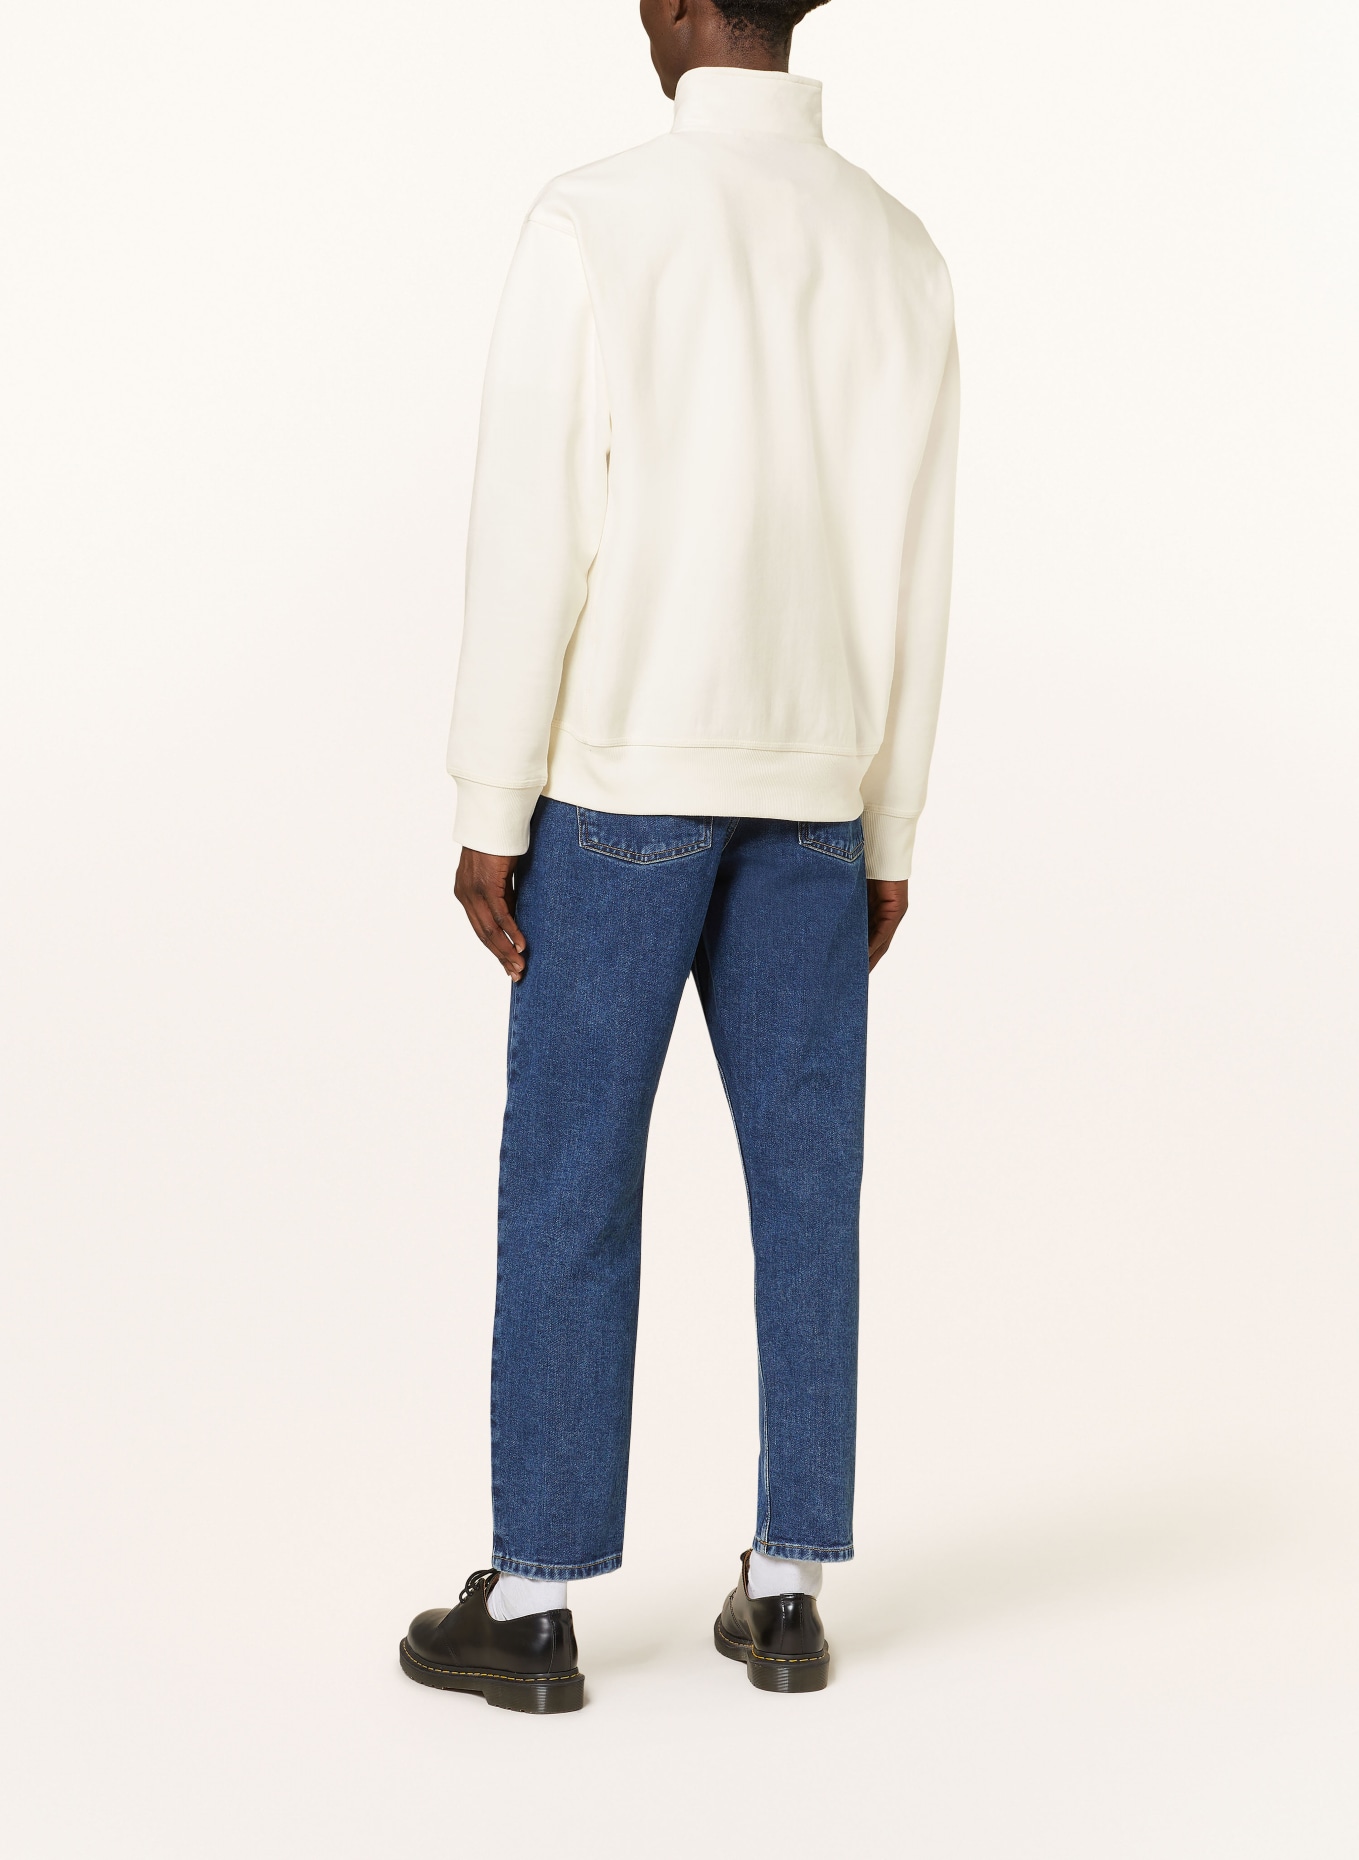 carhartt WIP Half-zip sweater in sweatshirt fabric, Color: BEIGE (Image 3)